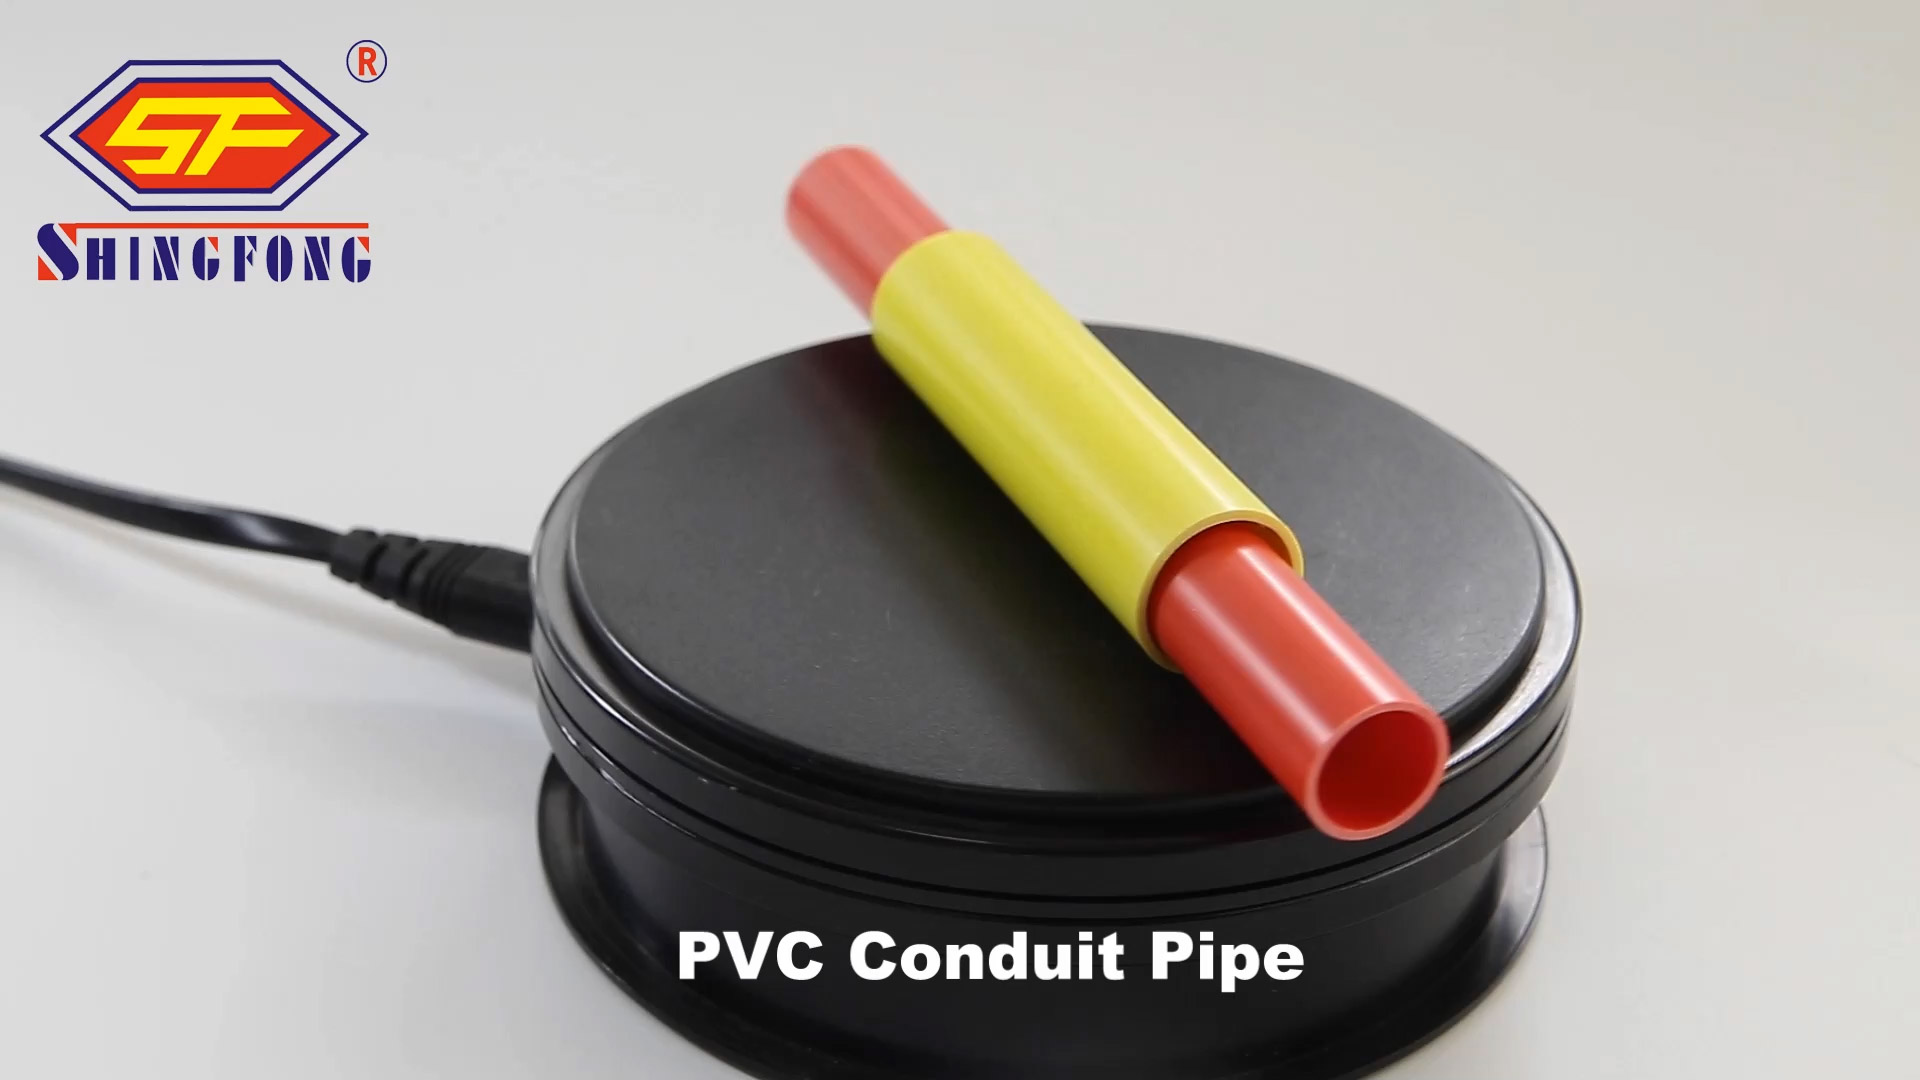 Venda a l'engròs de tubs de conductes de PVC d'alta qualitat - Sihui Shingfong Plastic Product Factory Co., Ltd.